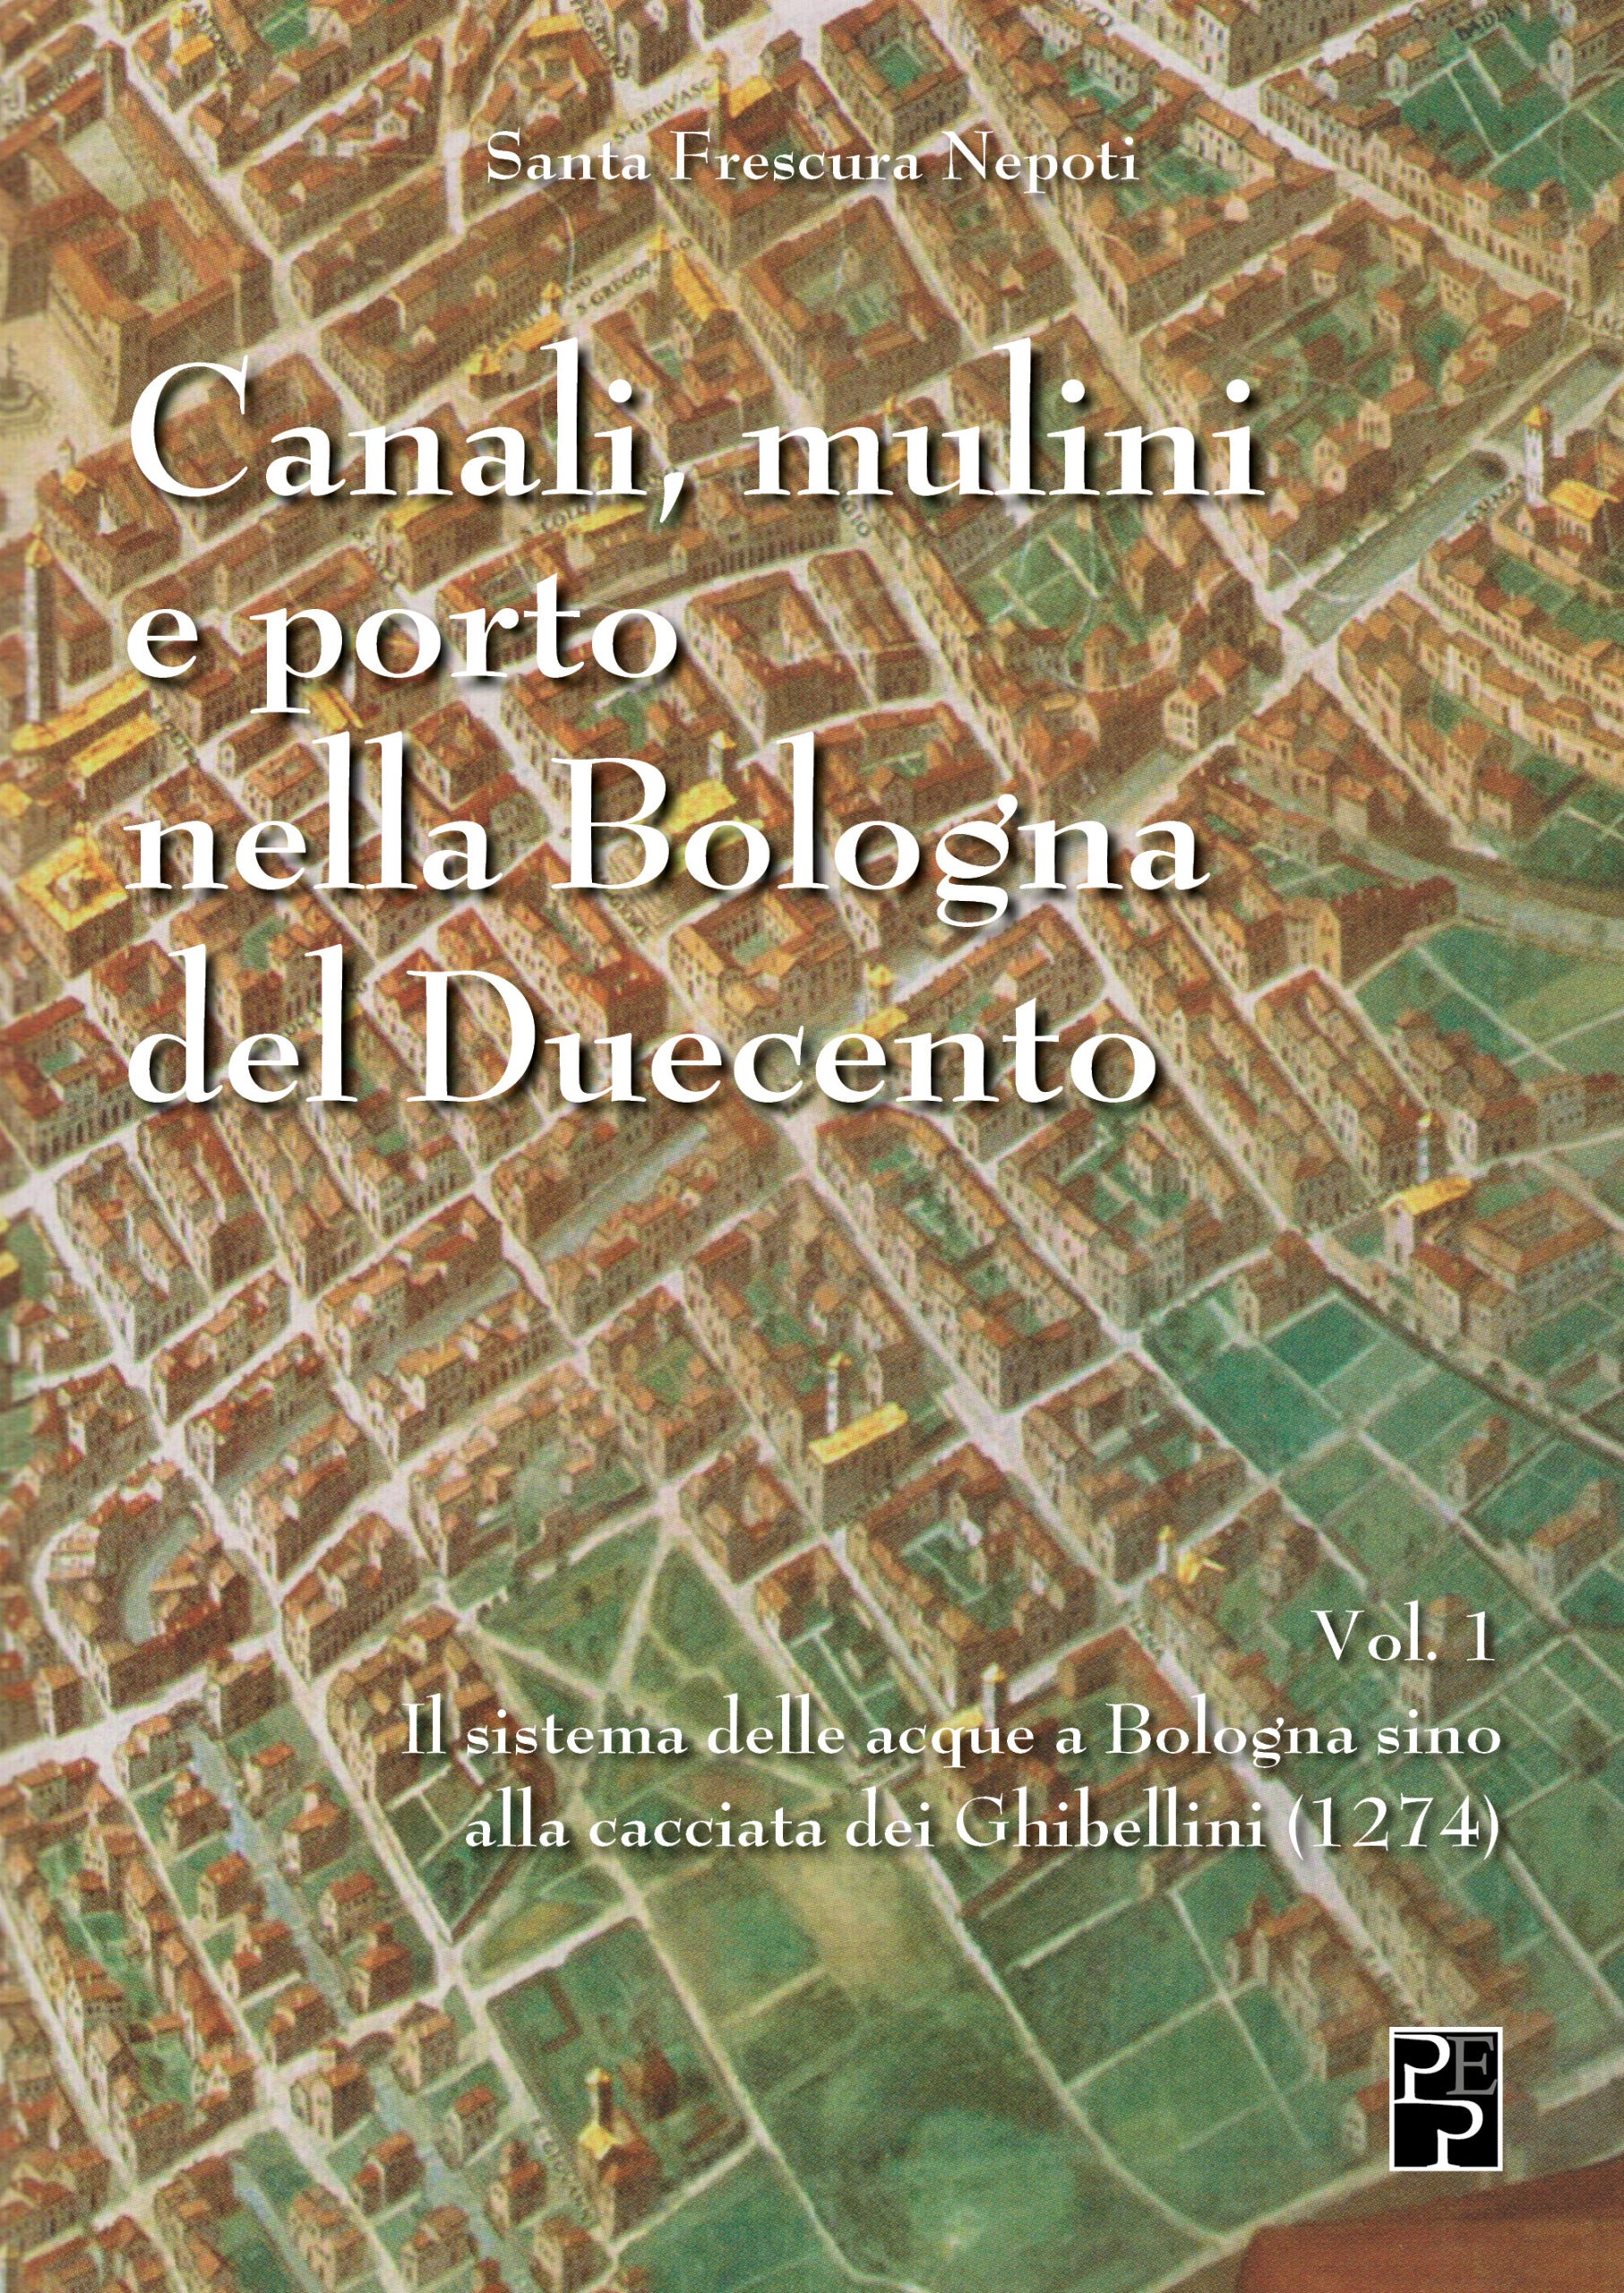 Canali, mulini e porto nella Bologna del Duecento Vol 1